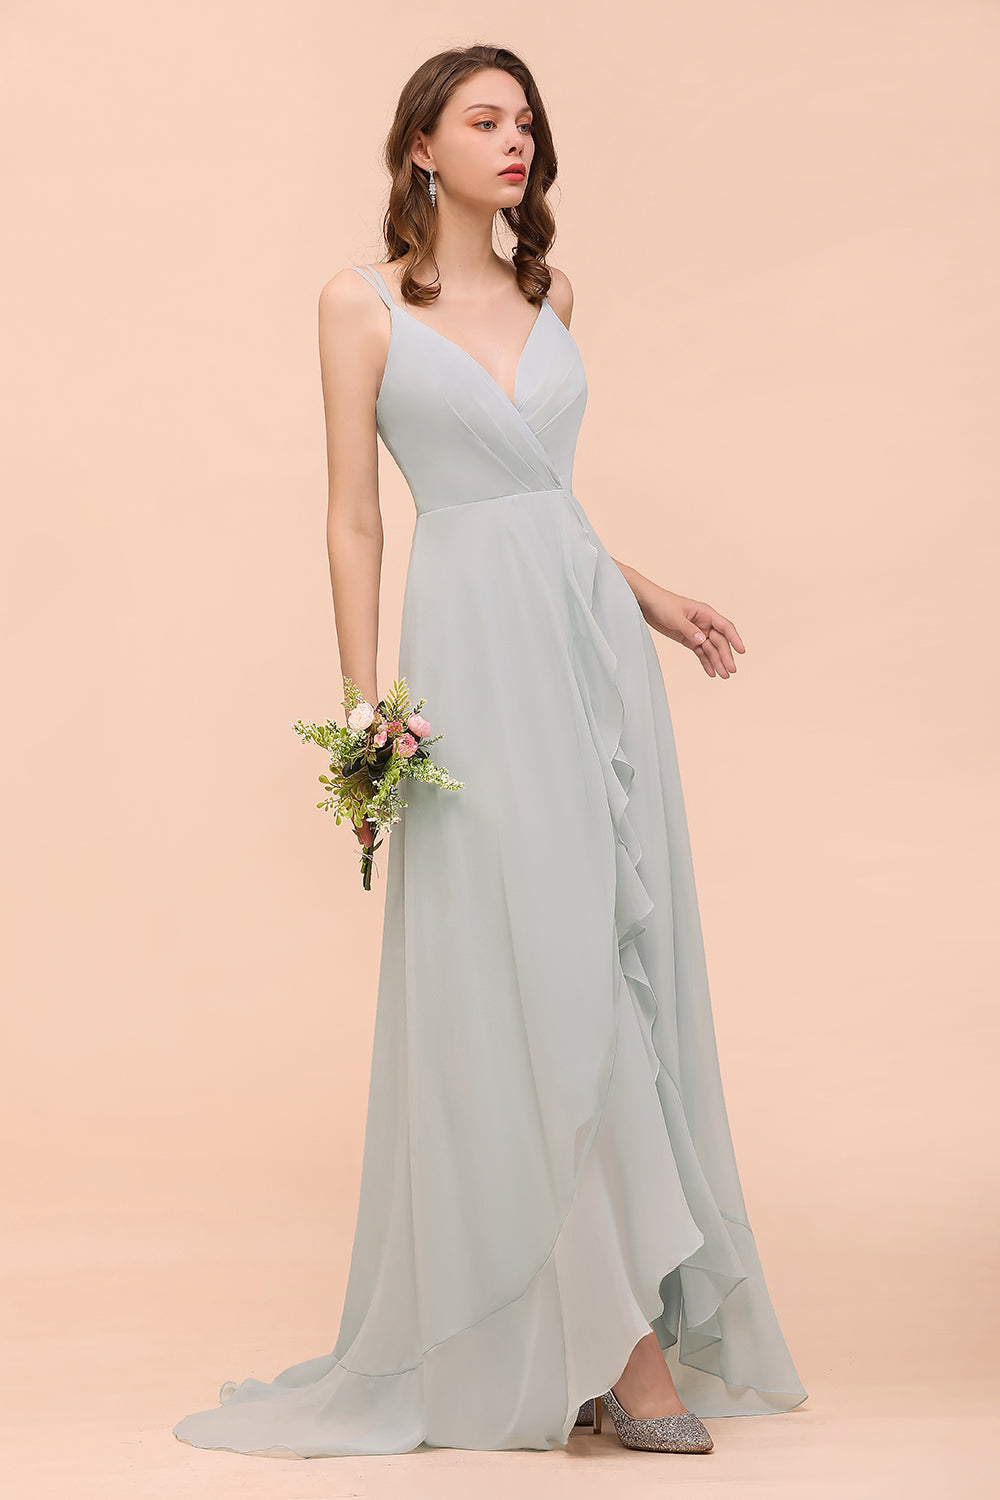 Finden Sie Brautjungfernkleider Lang Mint Grün online bei babyonlinedress.de. Hochzeitspartykleider Günstig Online für Sie zur Hochzeit gehen.